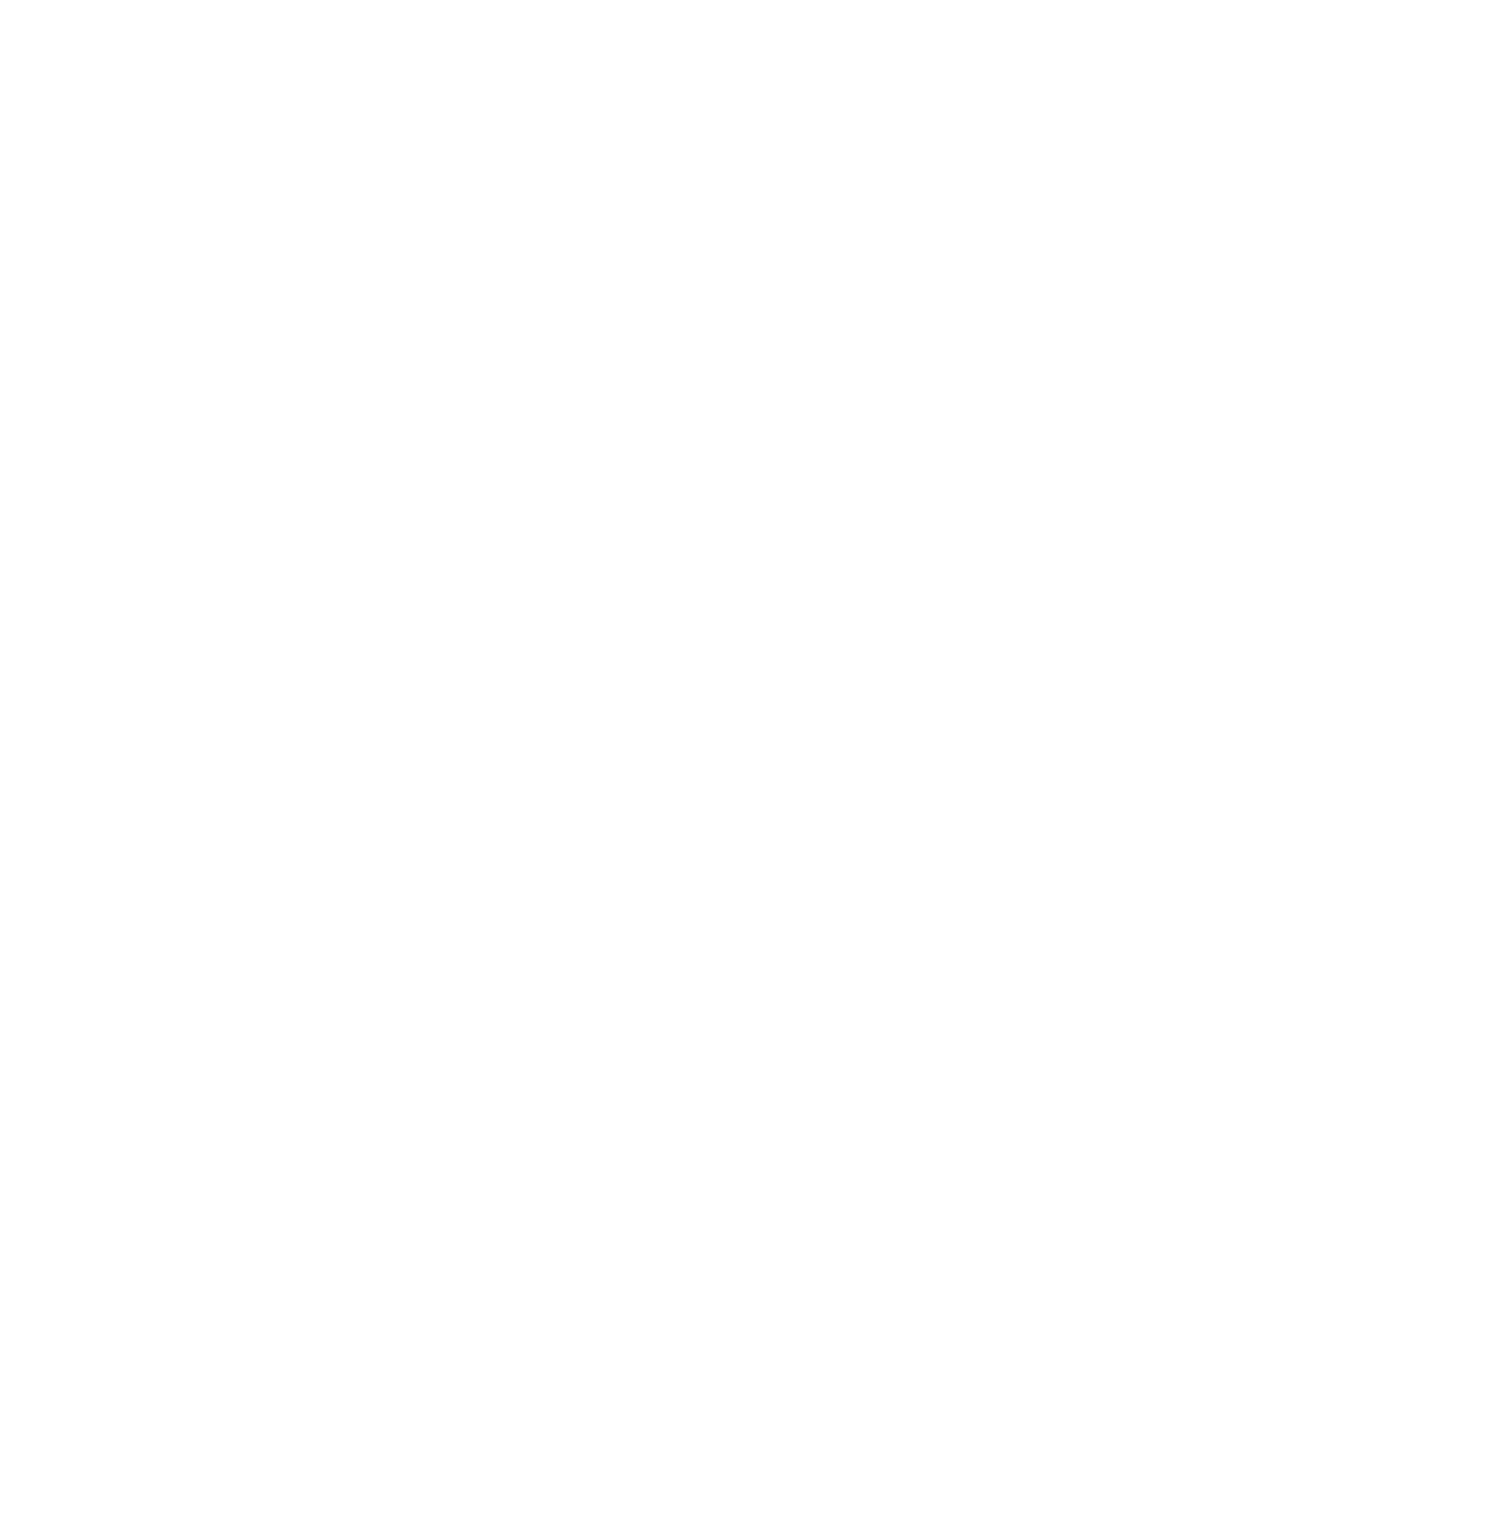 Gotham Depot Moto Storage